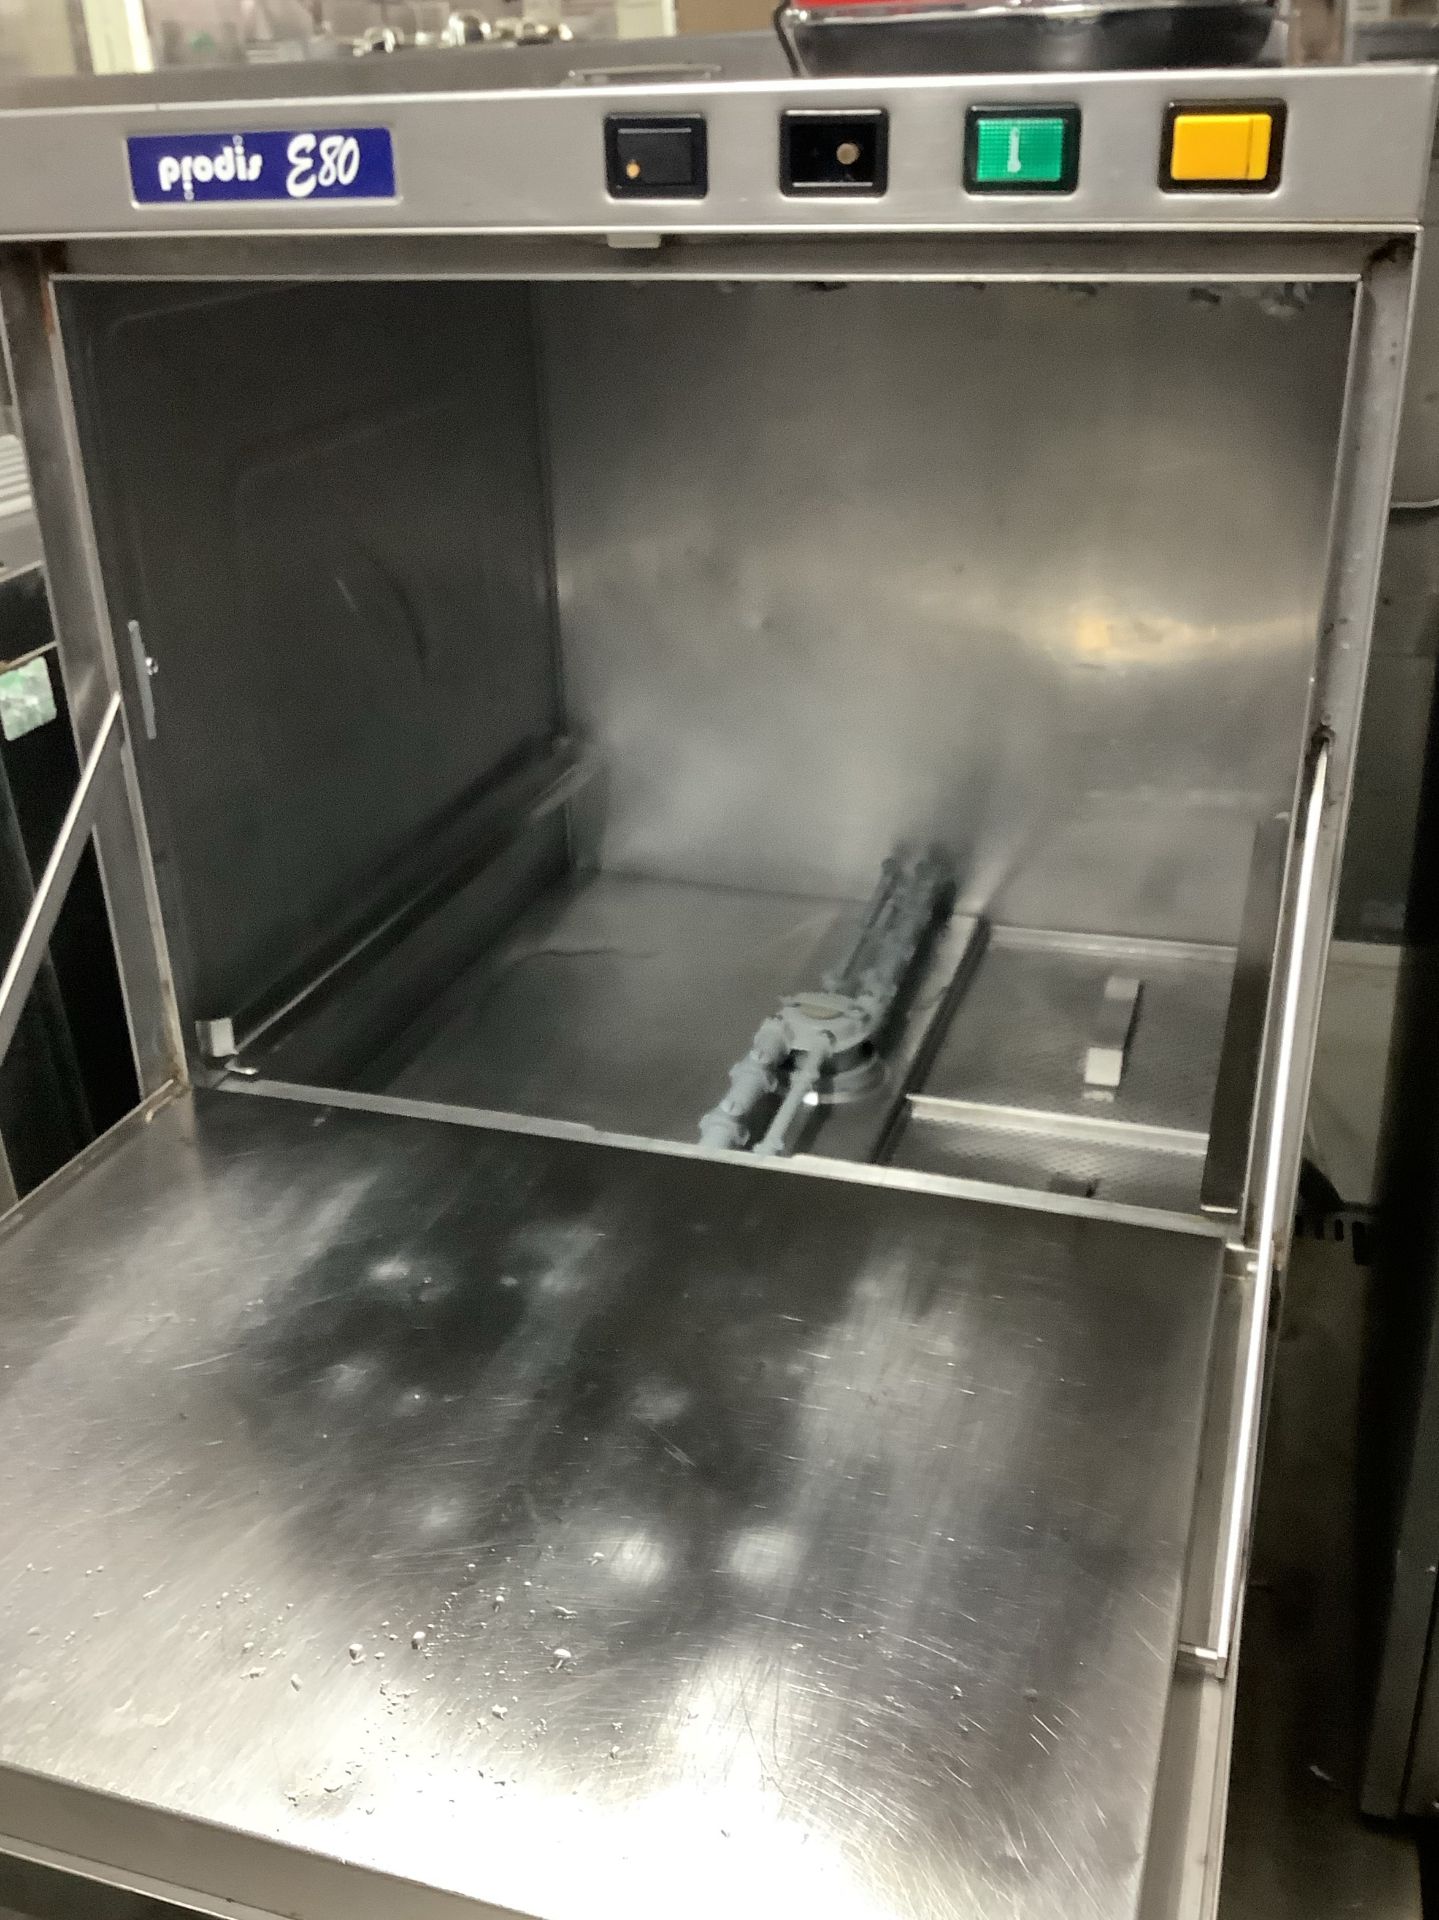 Prodis Dishwasher - Image 2 of 2